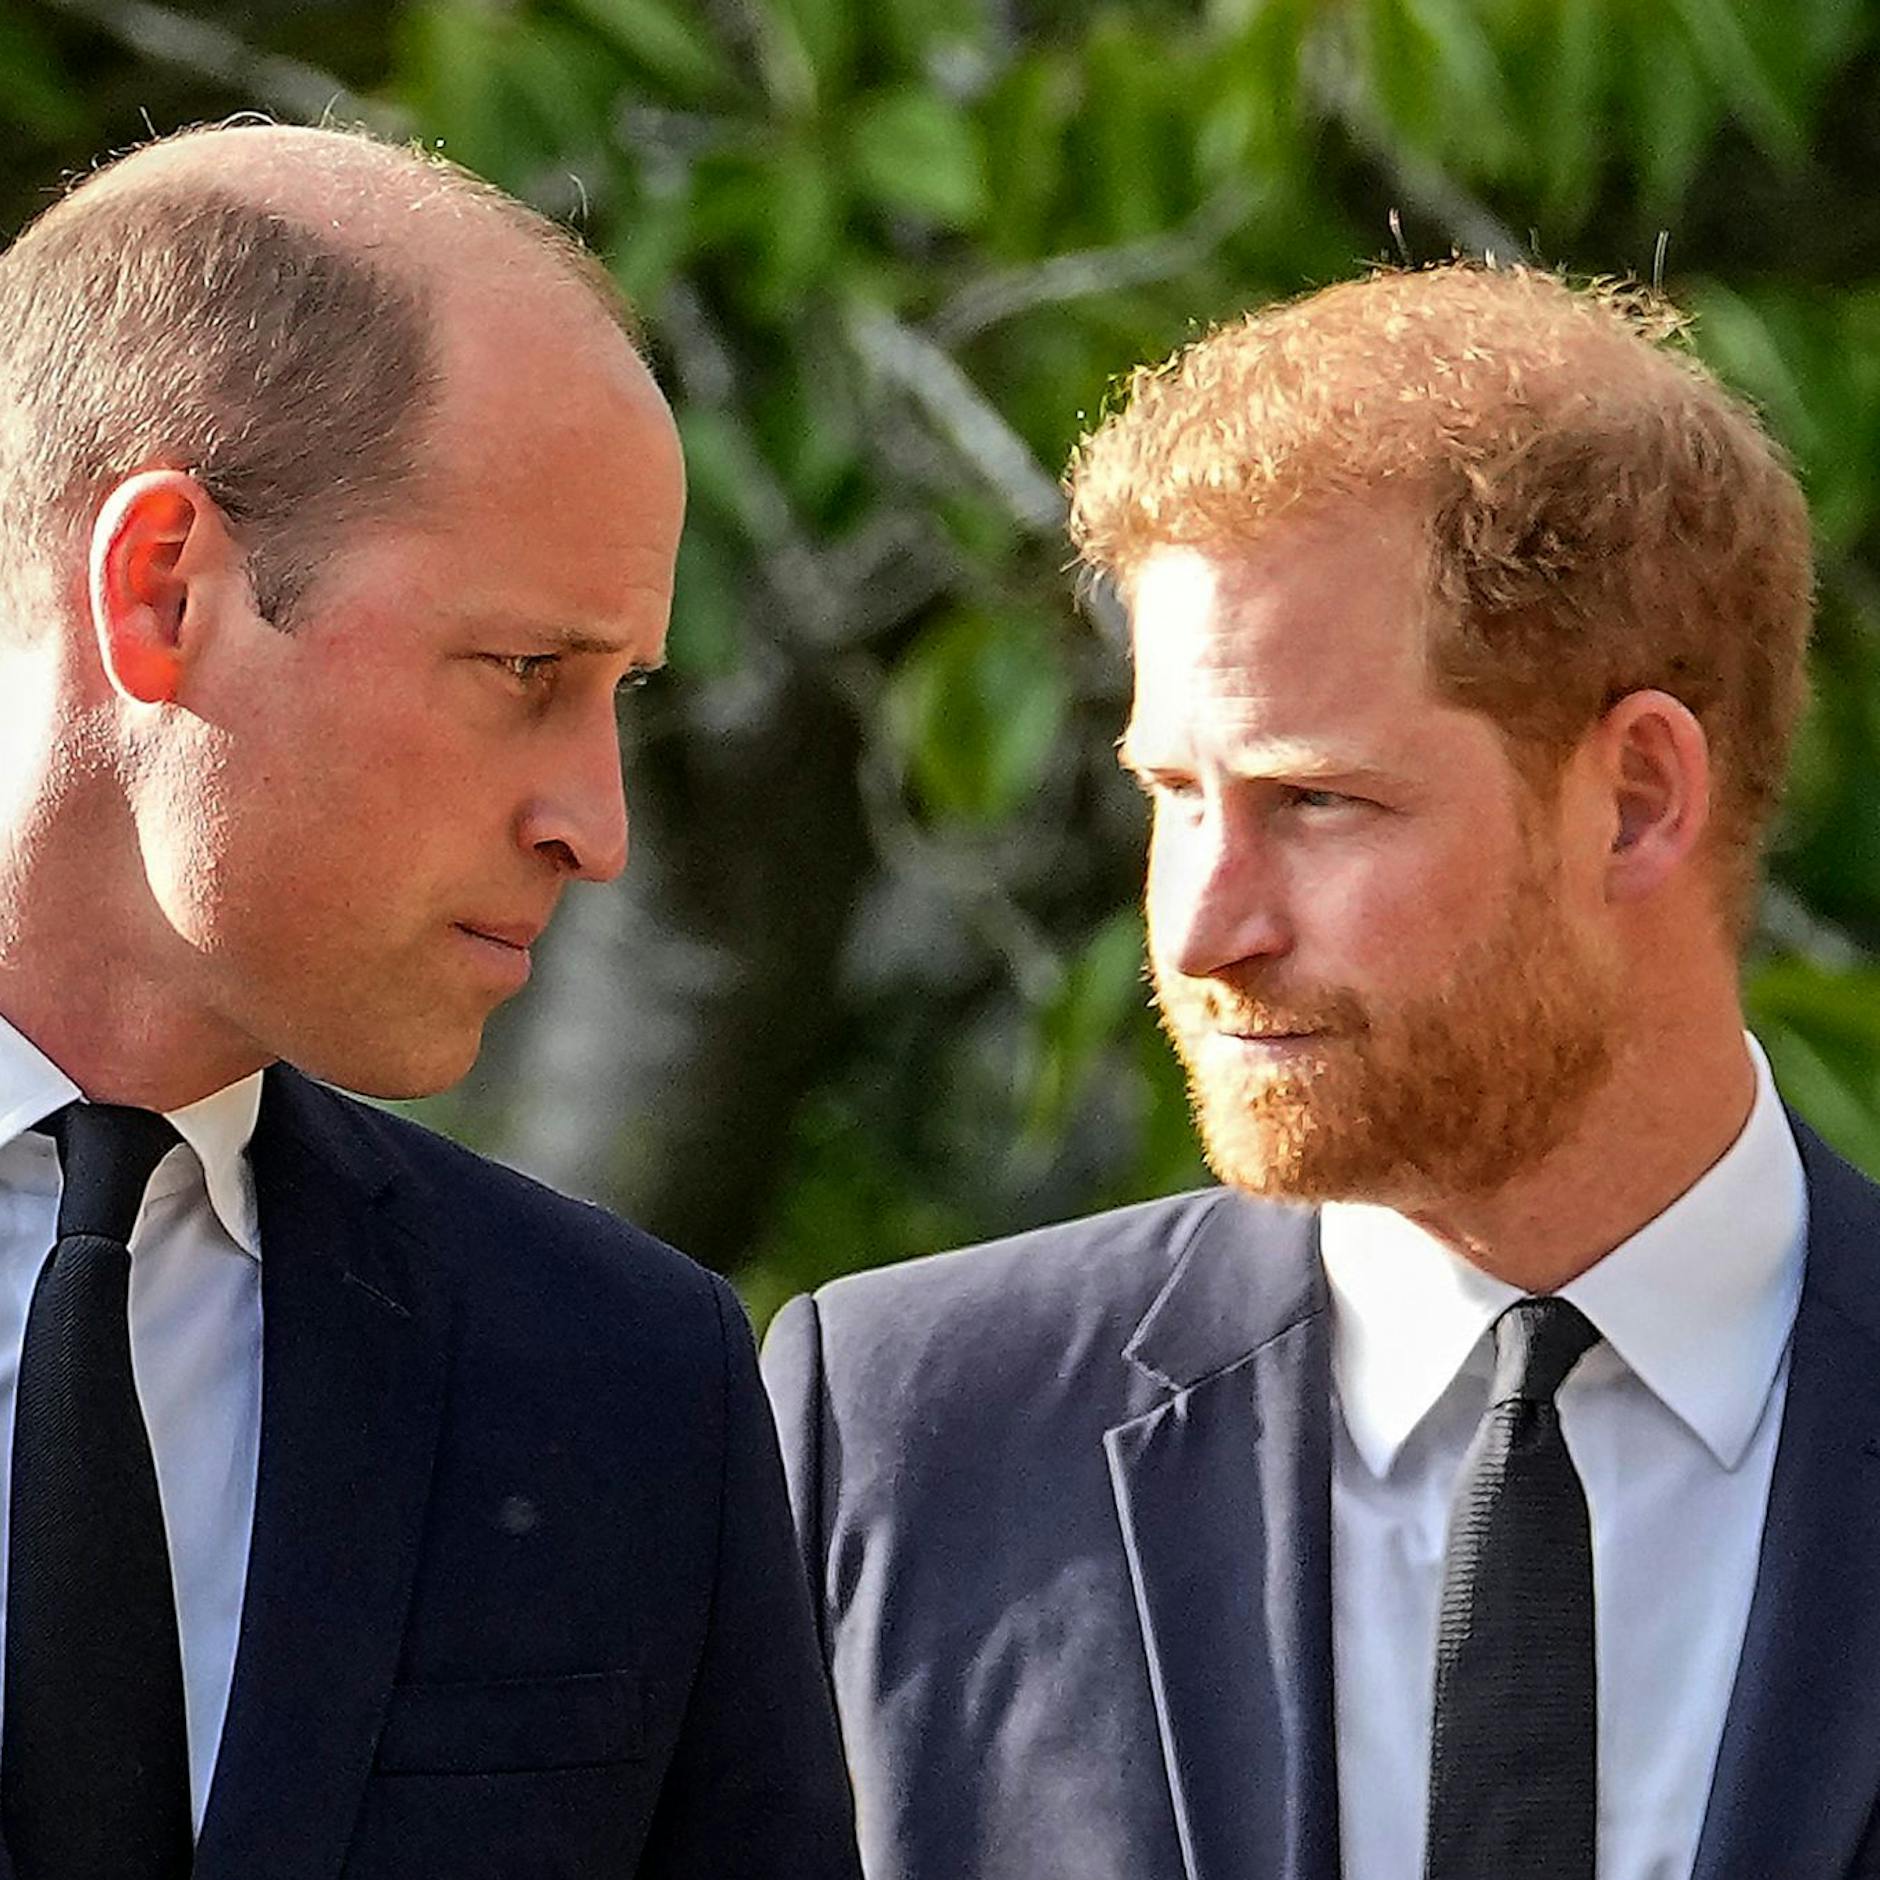 Image - Bericht: Prinz Harry wirft Bruder William körperlichen Angriff vor